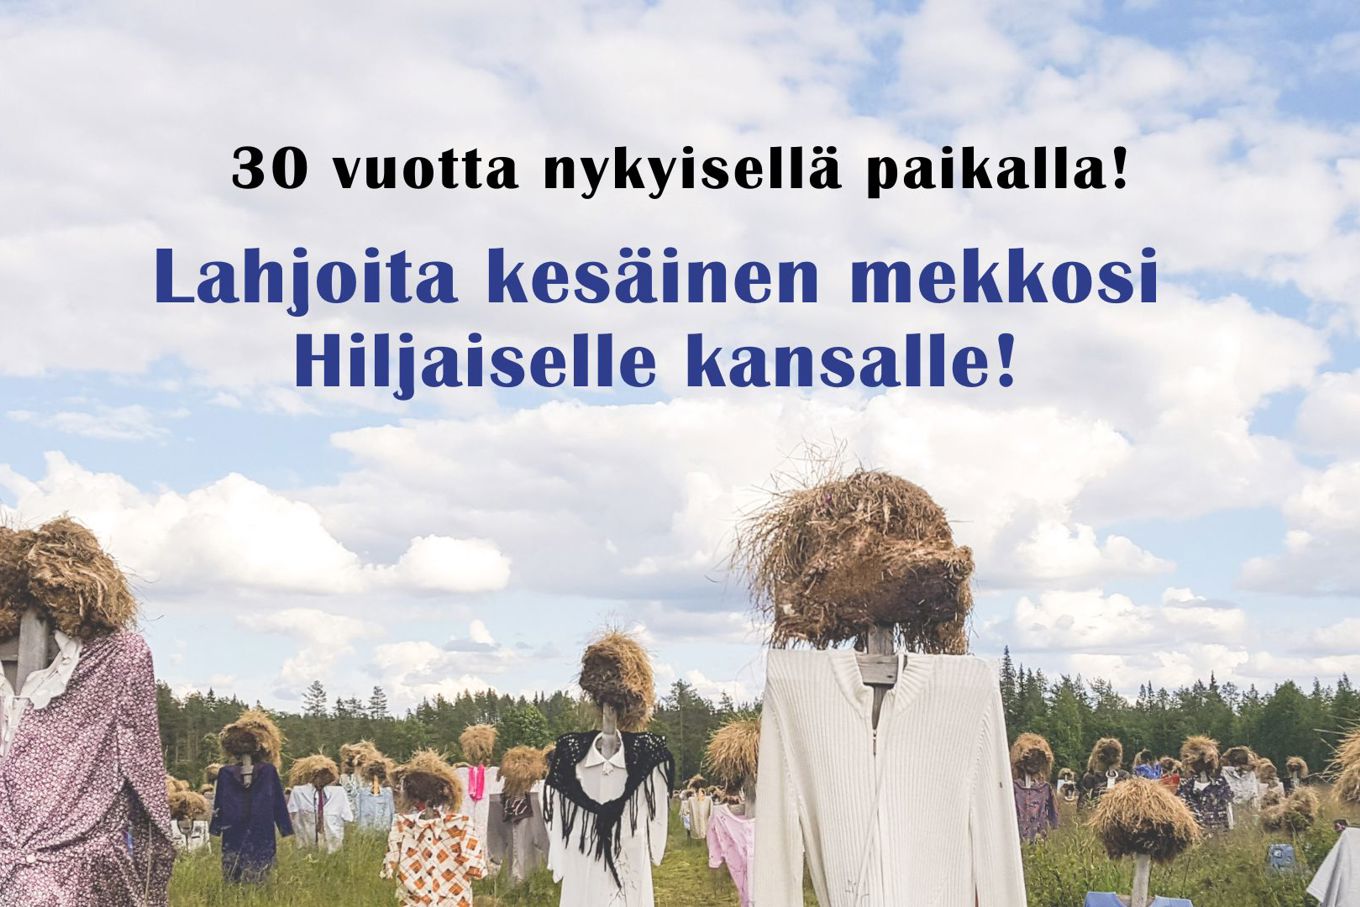 Taustakuvana kesäinen Hiljainen kansa. Taivaan kohdalla teksti: 30 vuotta nykyisellä paikalla! Lahjoita kesäinen mekkosi Hiljaiselle kansalle!